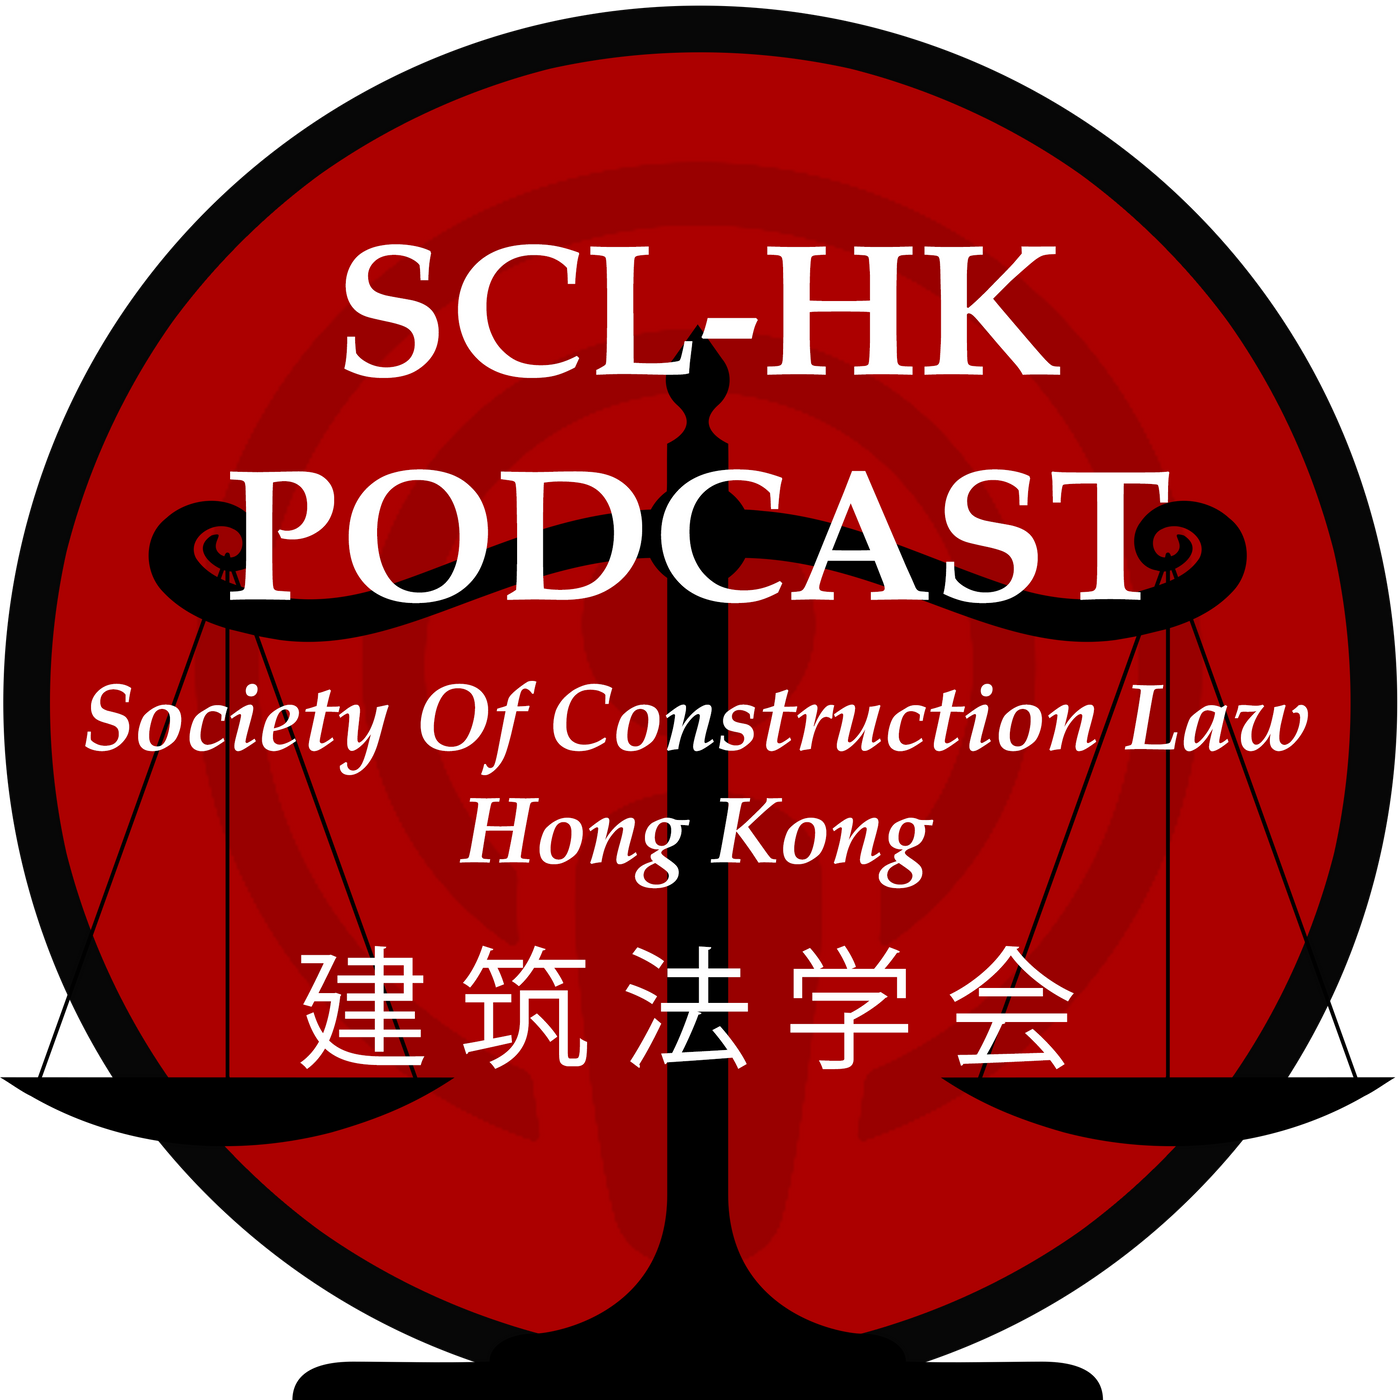 Society of Construction Law, Hong Kong